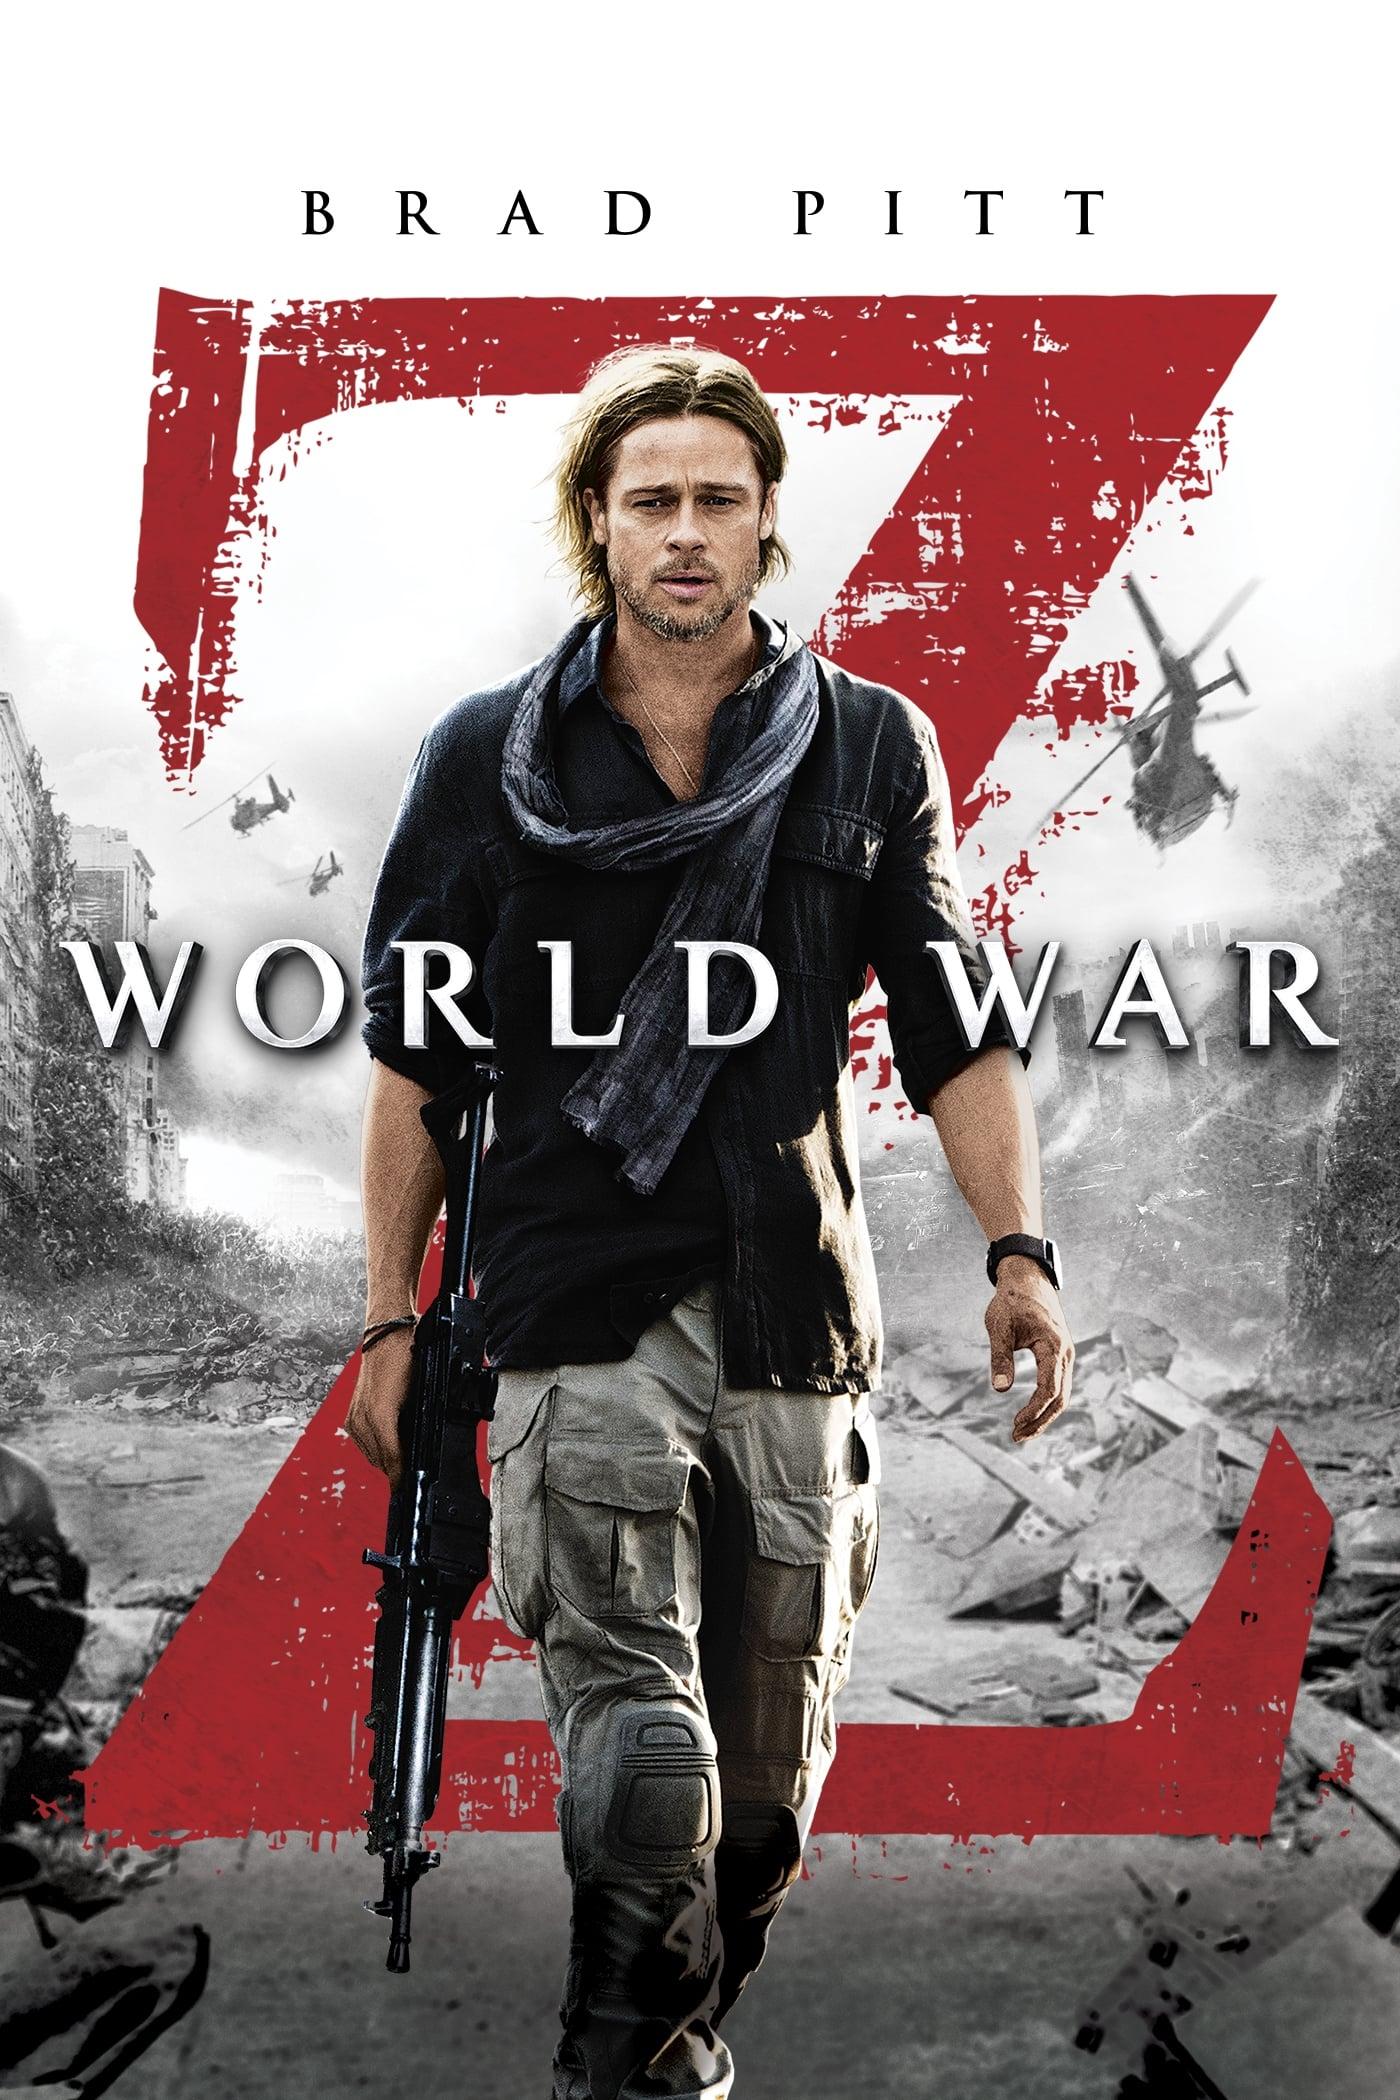 World War Z poster